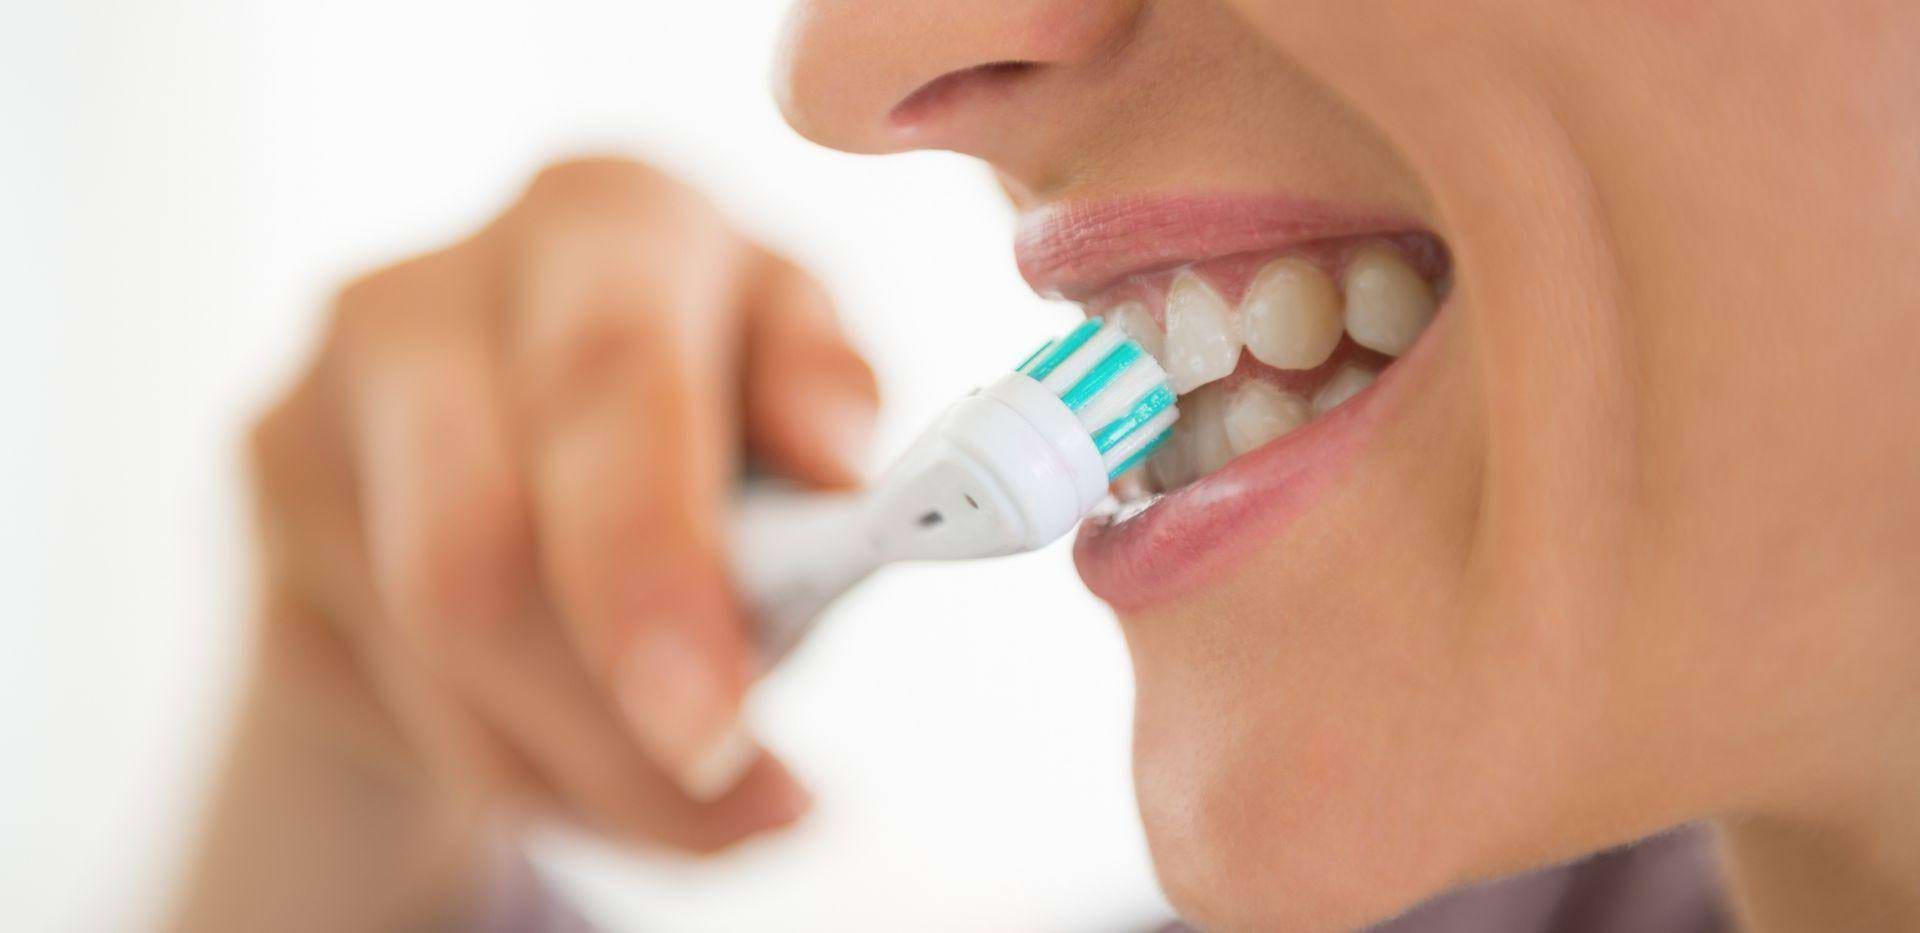 Čištění zubů zubním kartáčkem pro zdravou ústní hygienu.